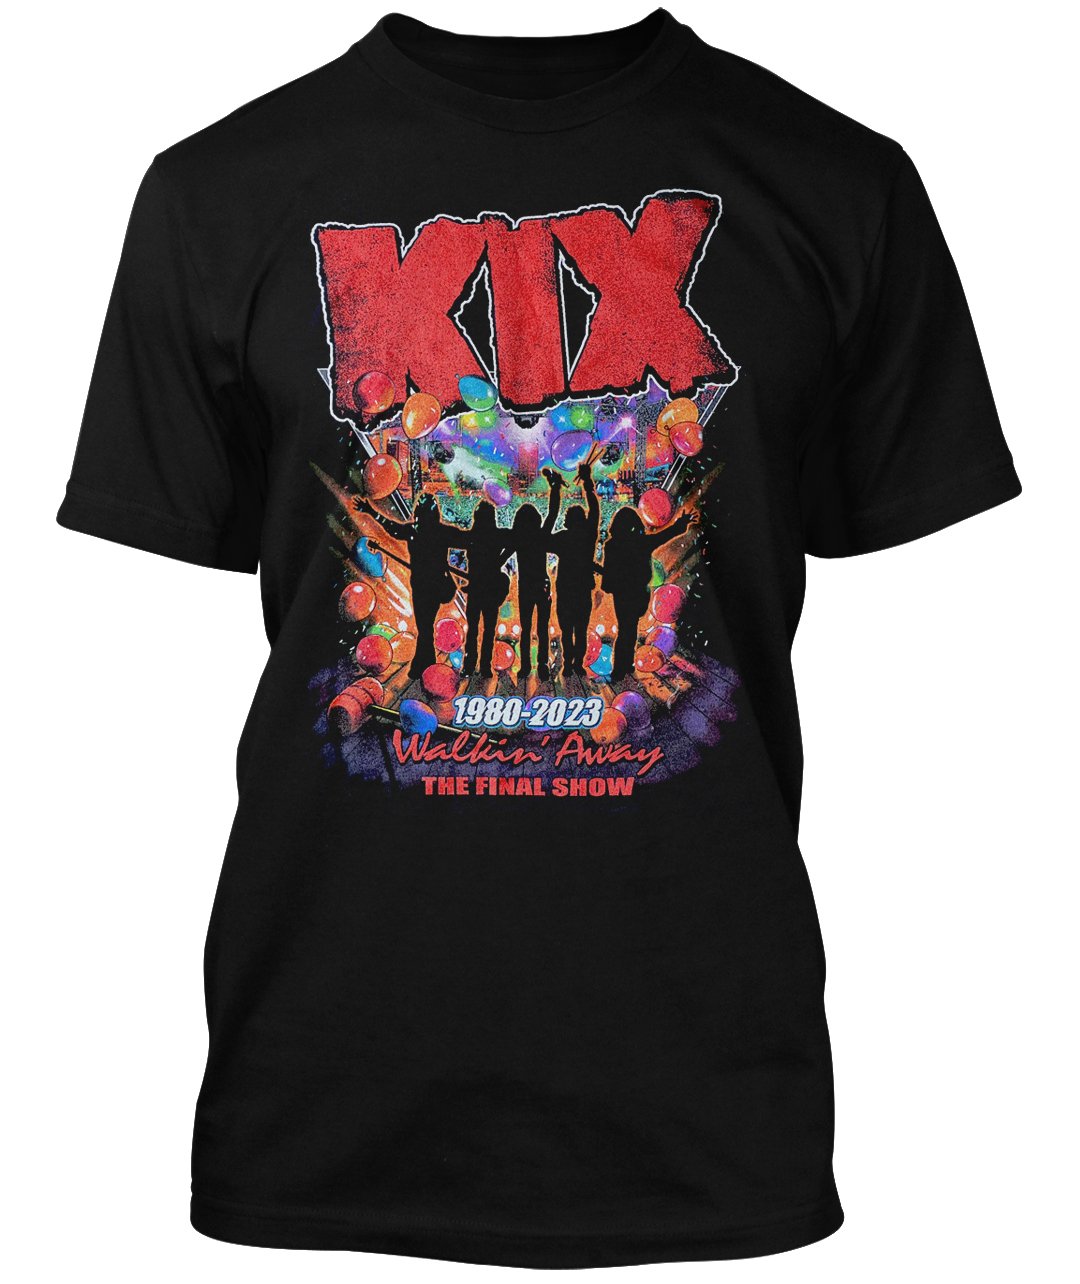 KIX Final Show Walkin' Away Tee — Rightrock Sportswear